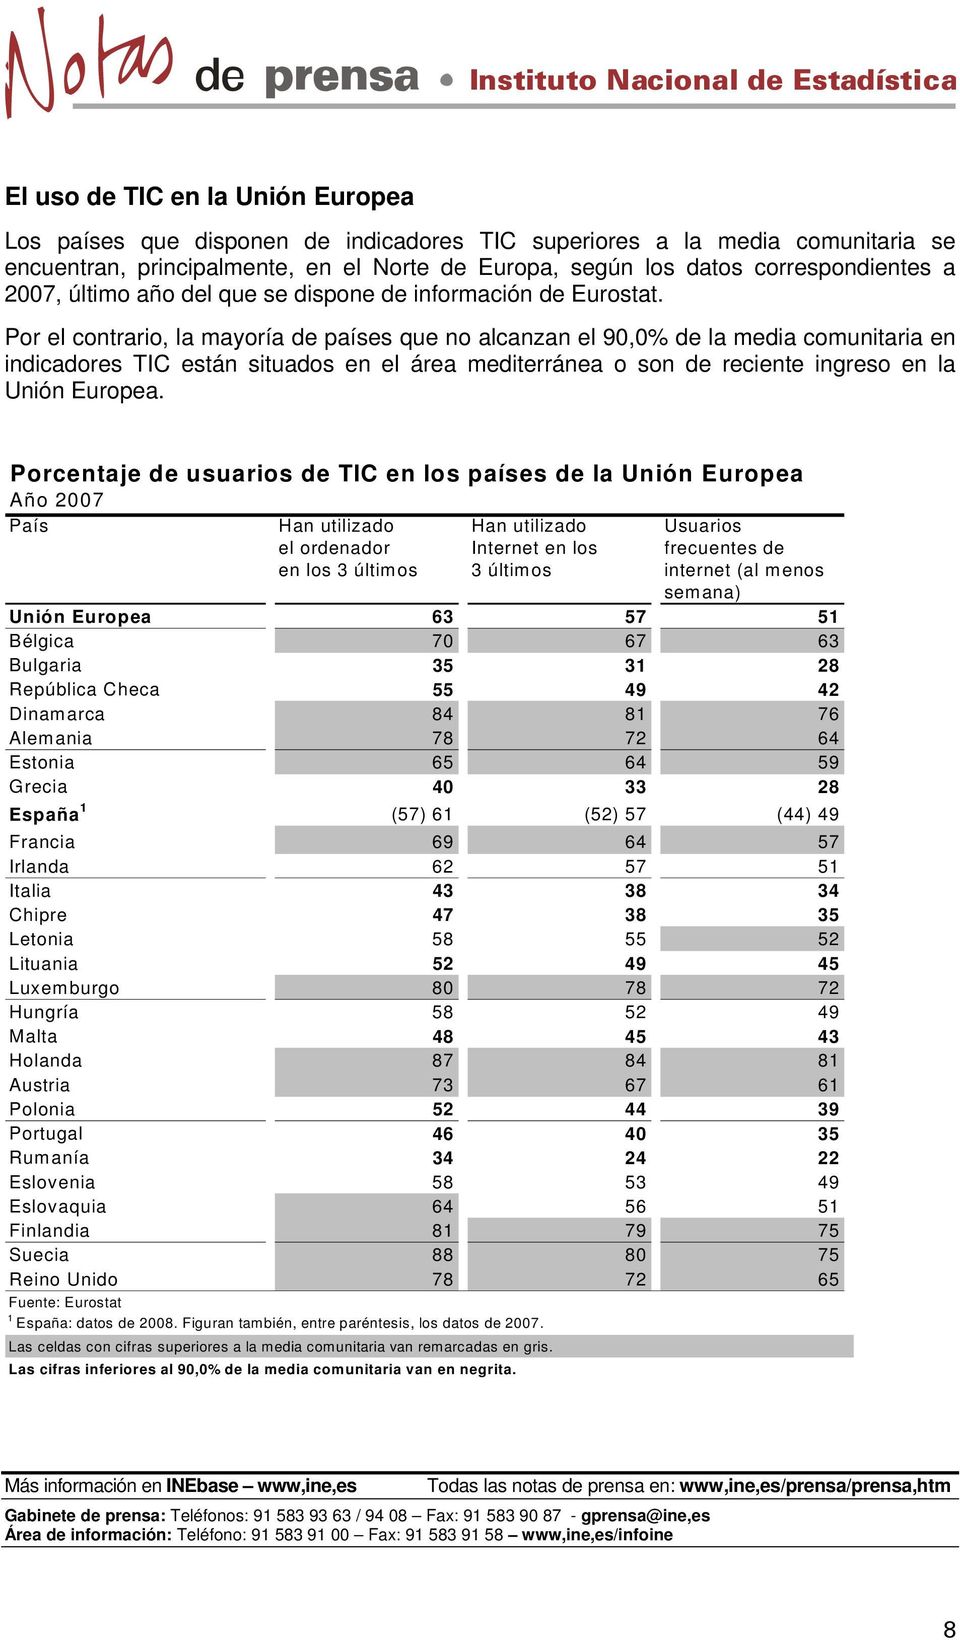 Por el contrario, la mayoría de países que no alcanzan el 90,0% de la media comunitaria en indicadores TIC están situados en el área mediterránea o son de reciente ingreso en la Unión Europea.